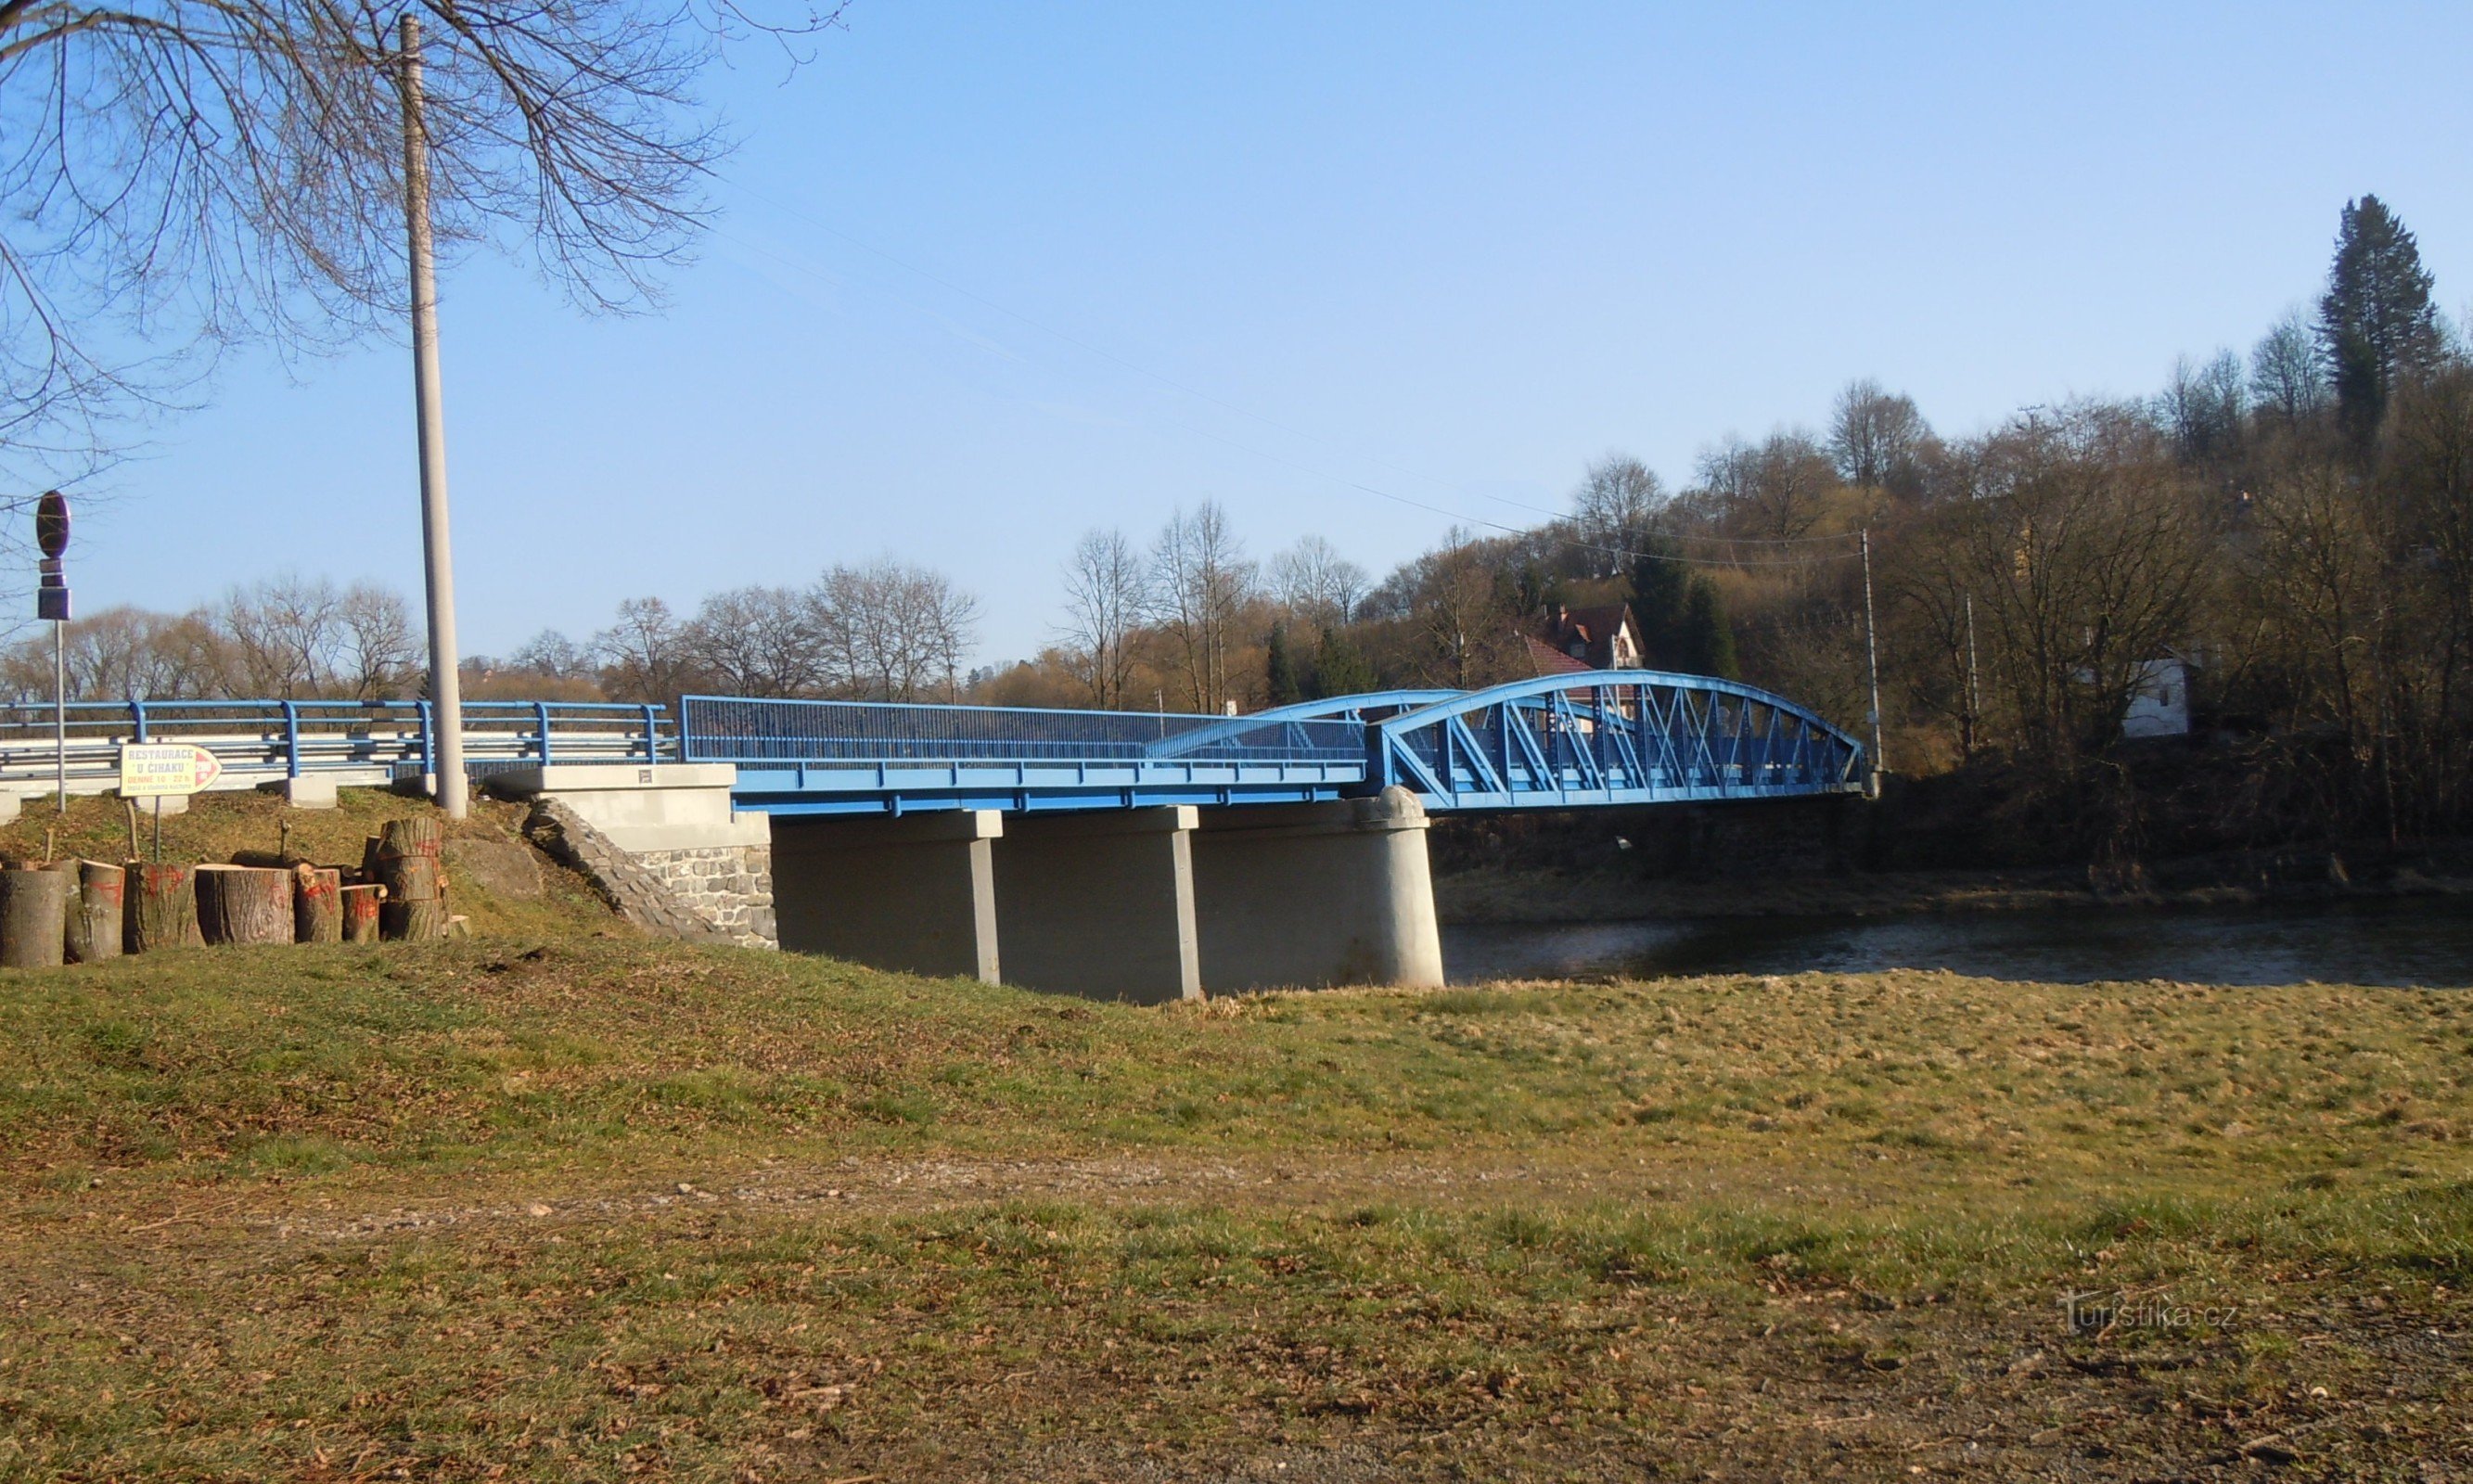 Ledečko - un pod cu o tabără de navigație